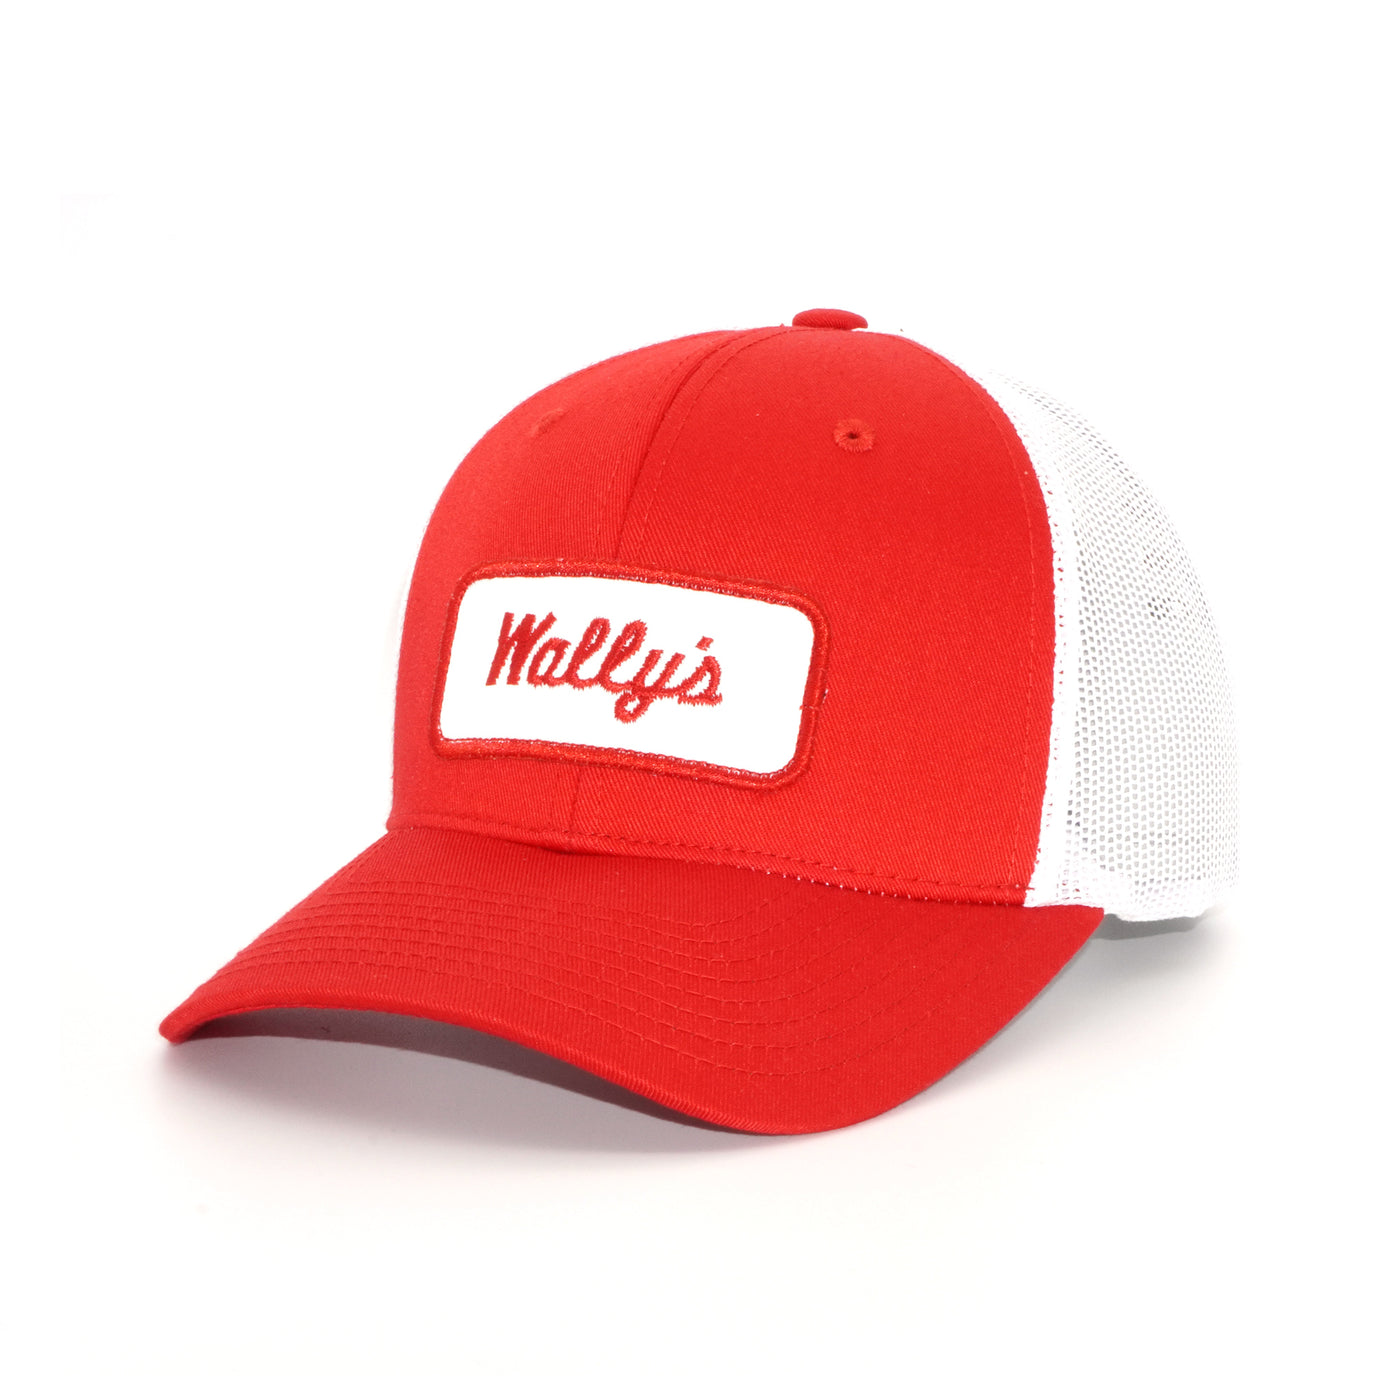 Wally's Mechanic Red Trucker Hat